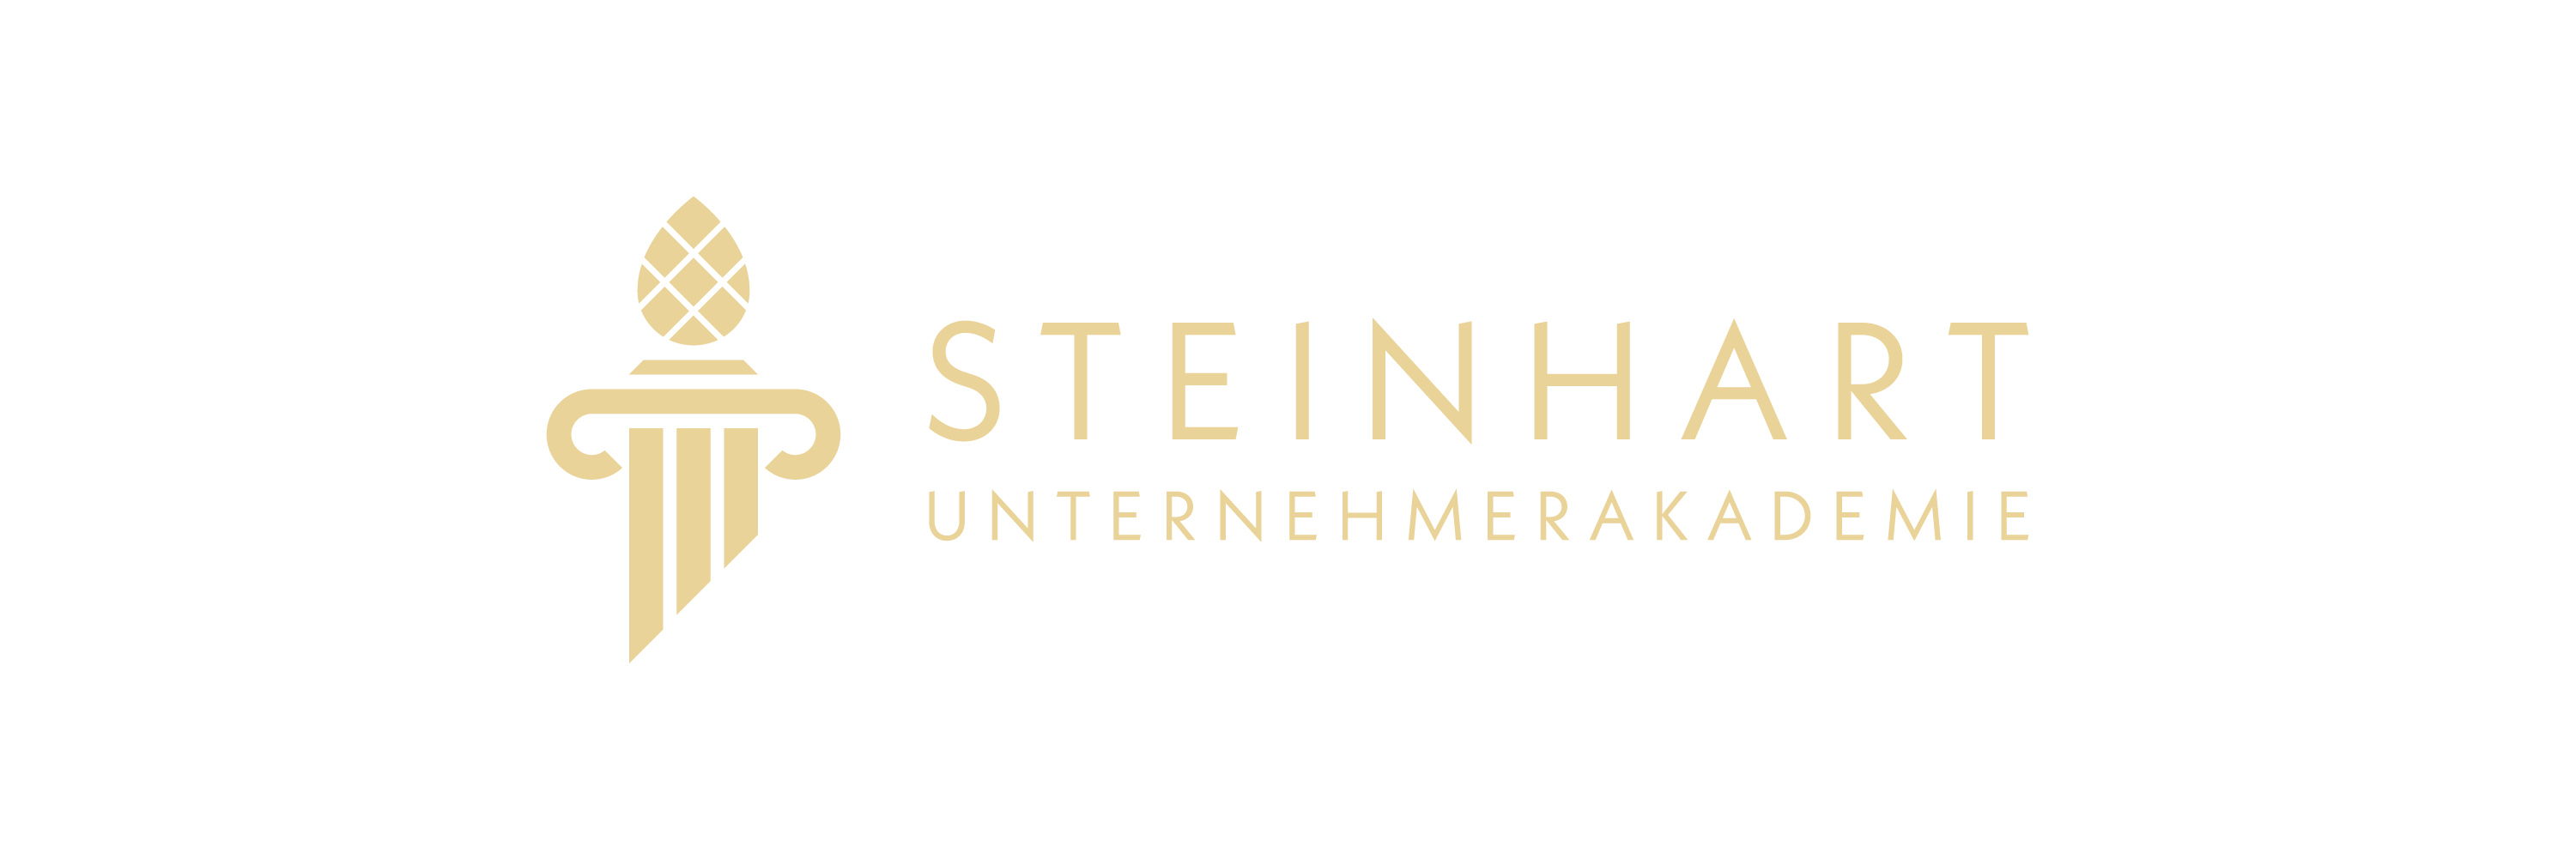 Steinhart Unternehmerakademie